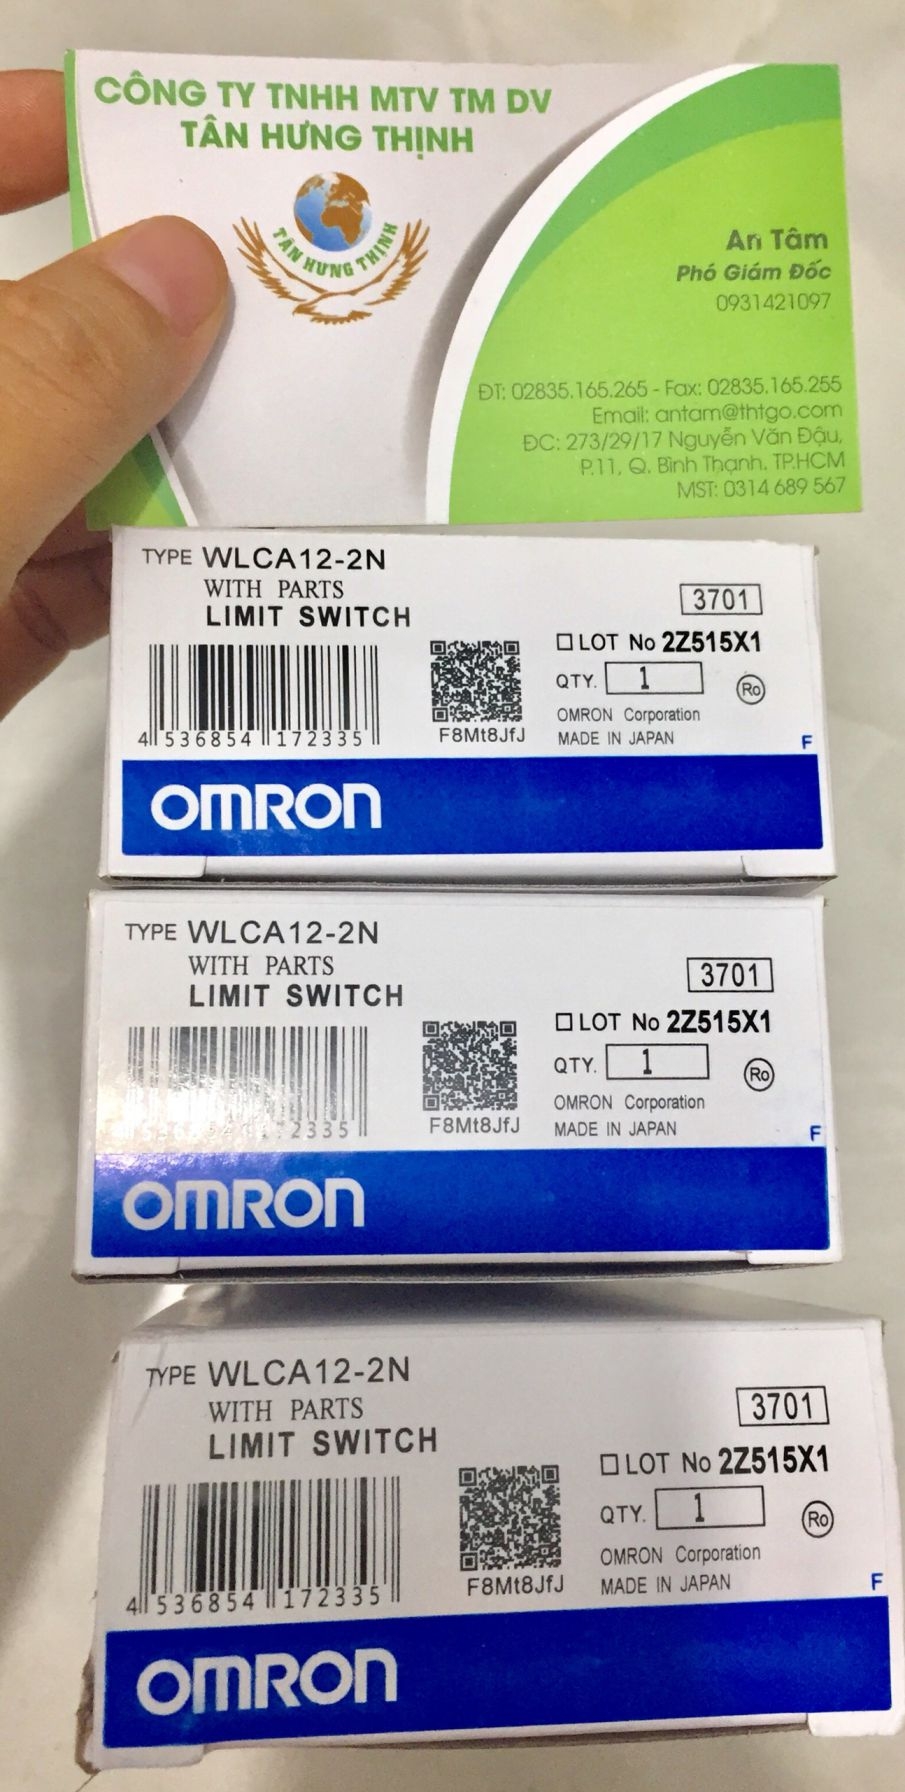 OMRON WLCA12-2N